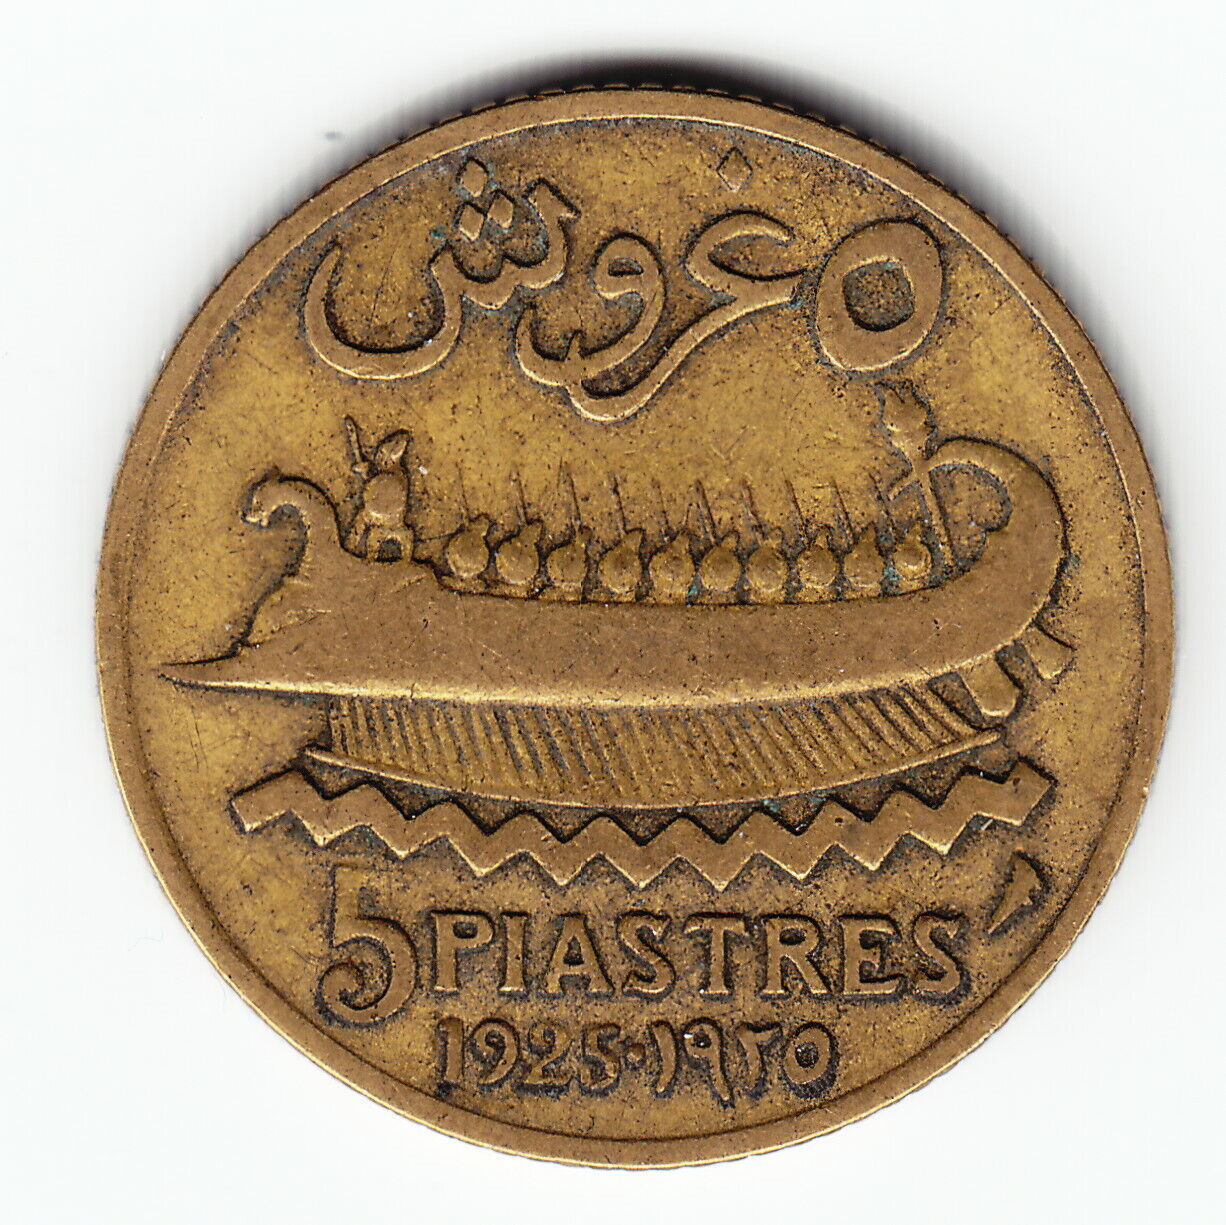 Lebanon 5 Piastres 1925 Km5.2 Al-br No Mint Mark At Left Of '5' Very Rare Error!